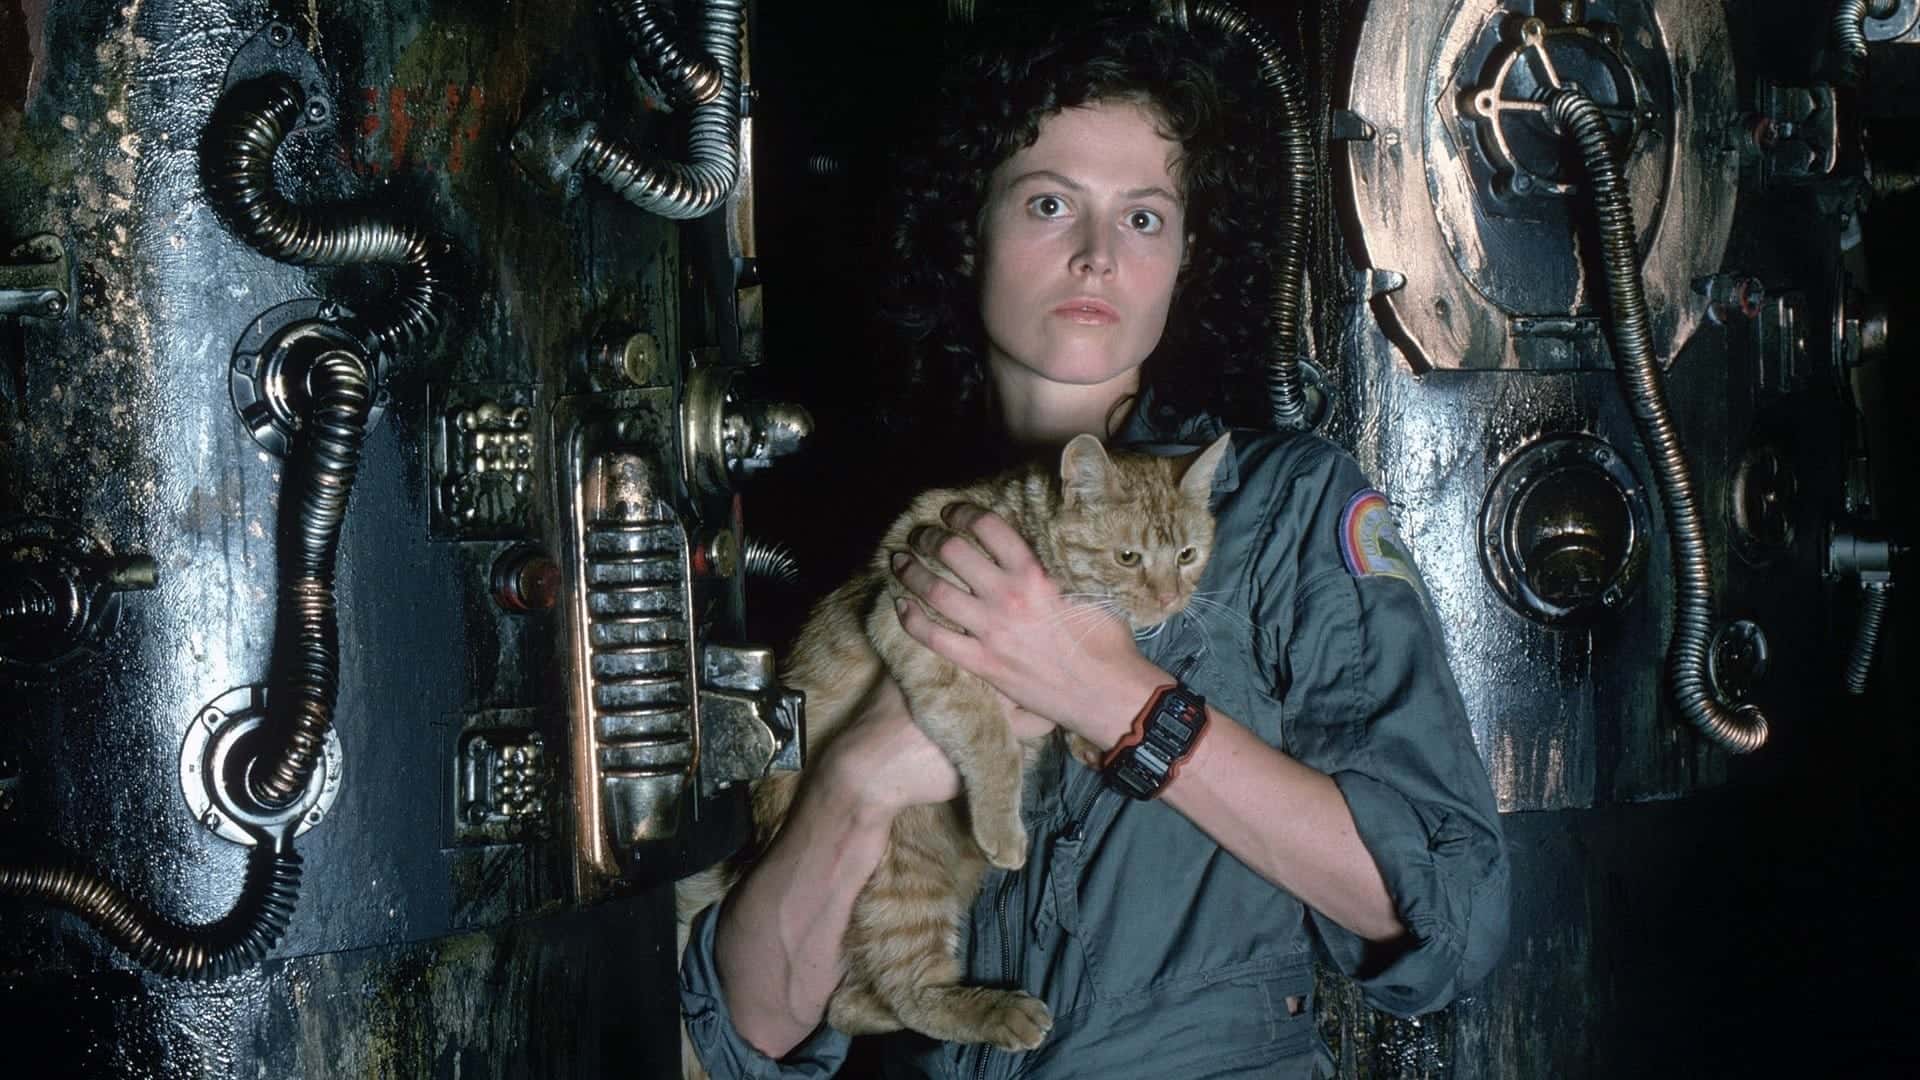 Una de las personajes de la película de terror Alien, el octavo pasajero sujetando un gato